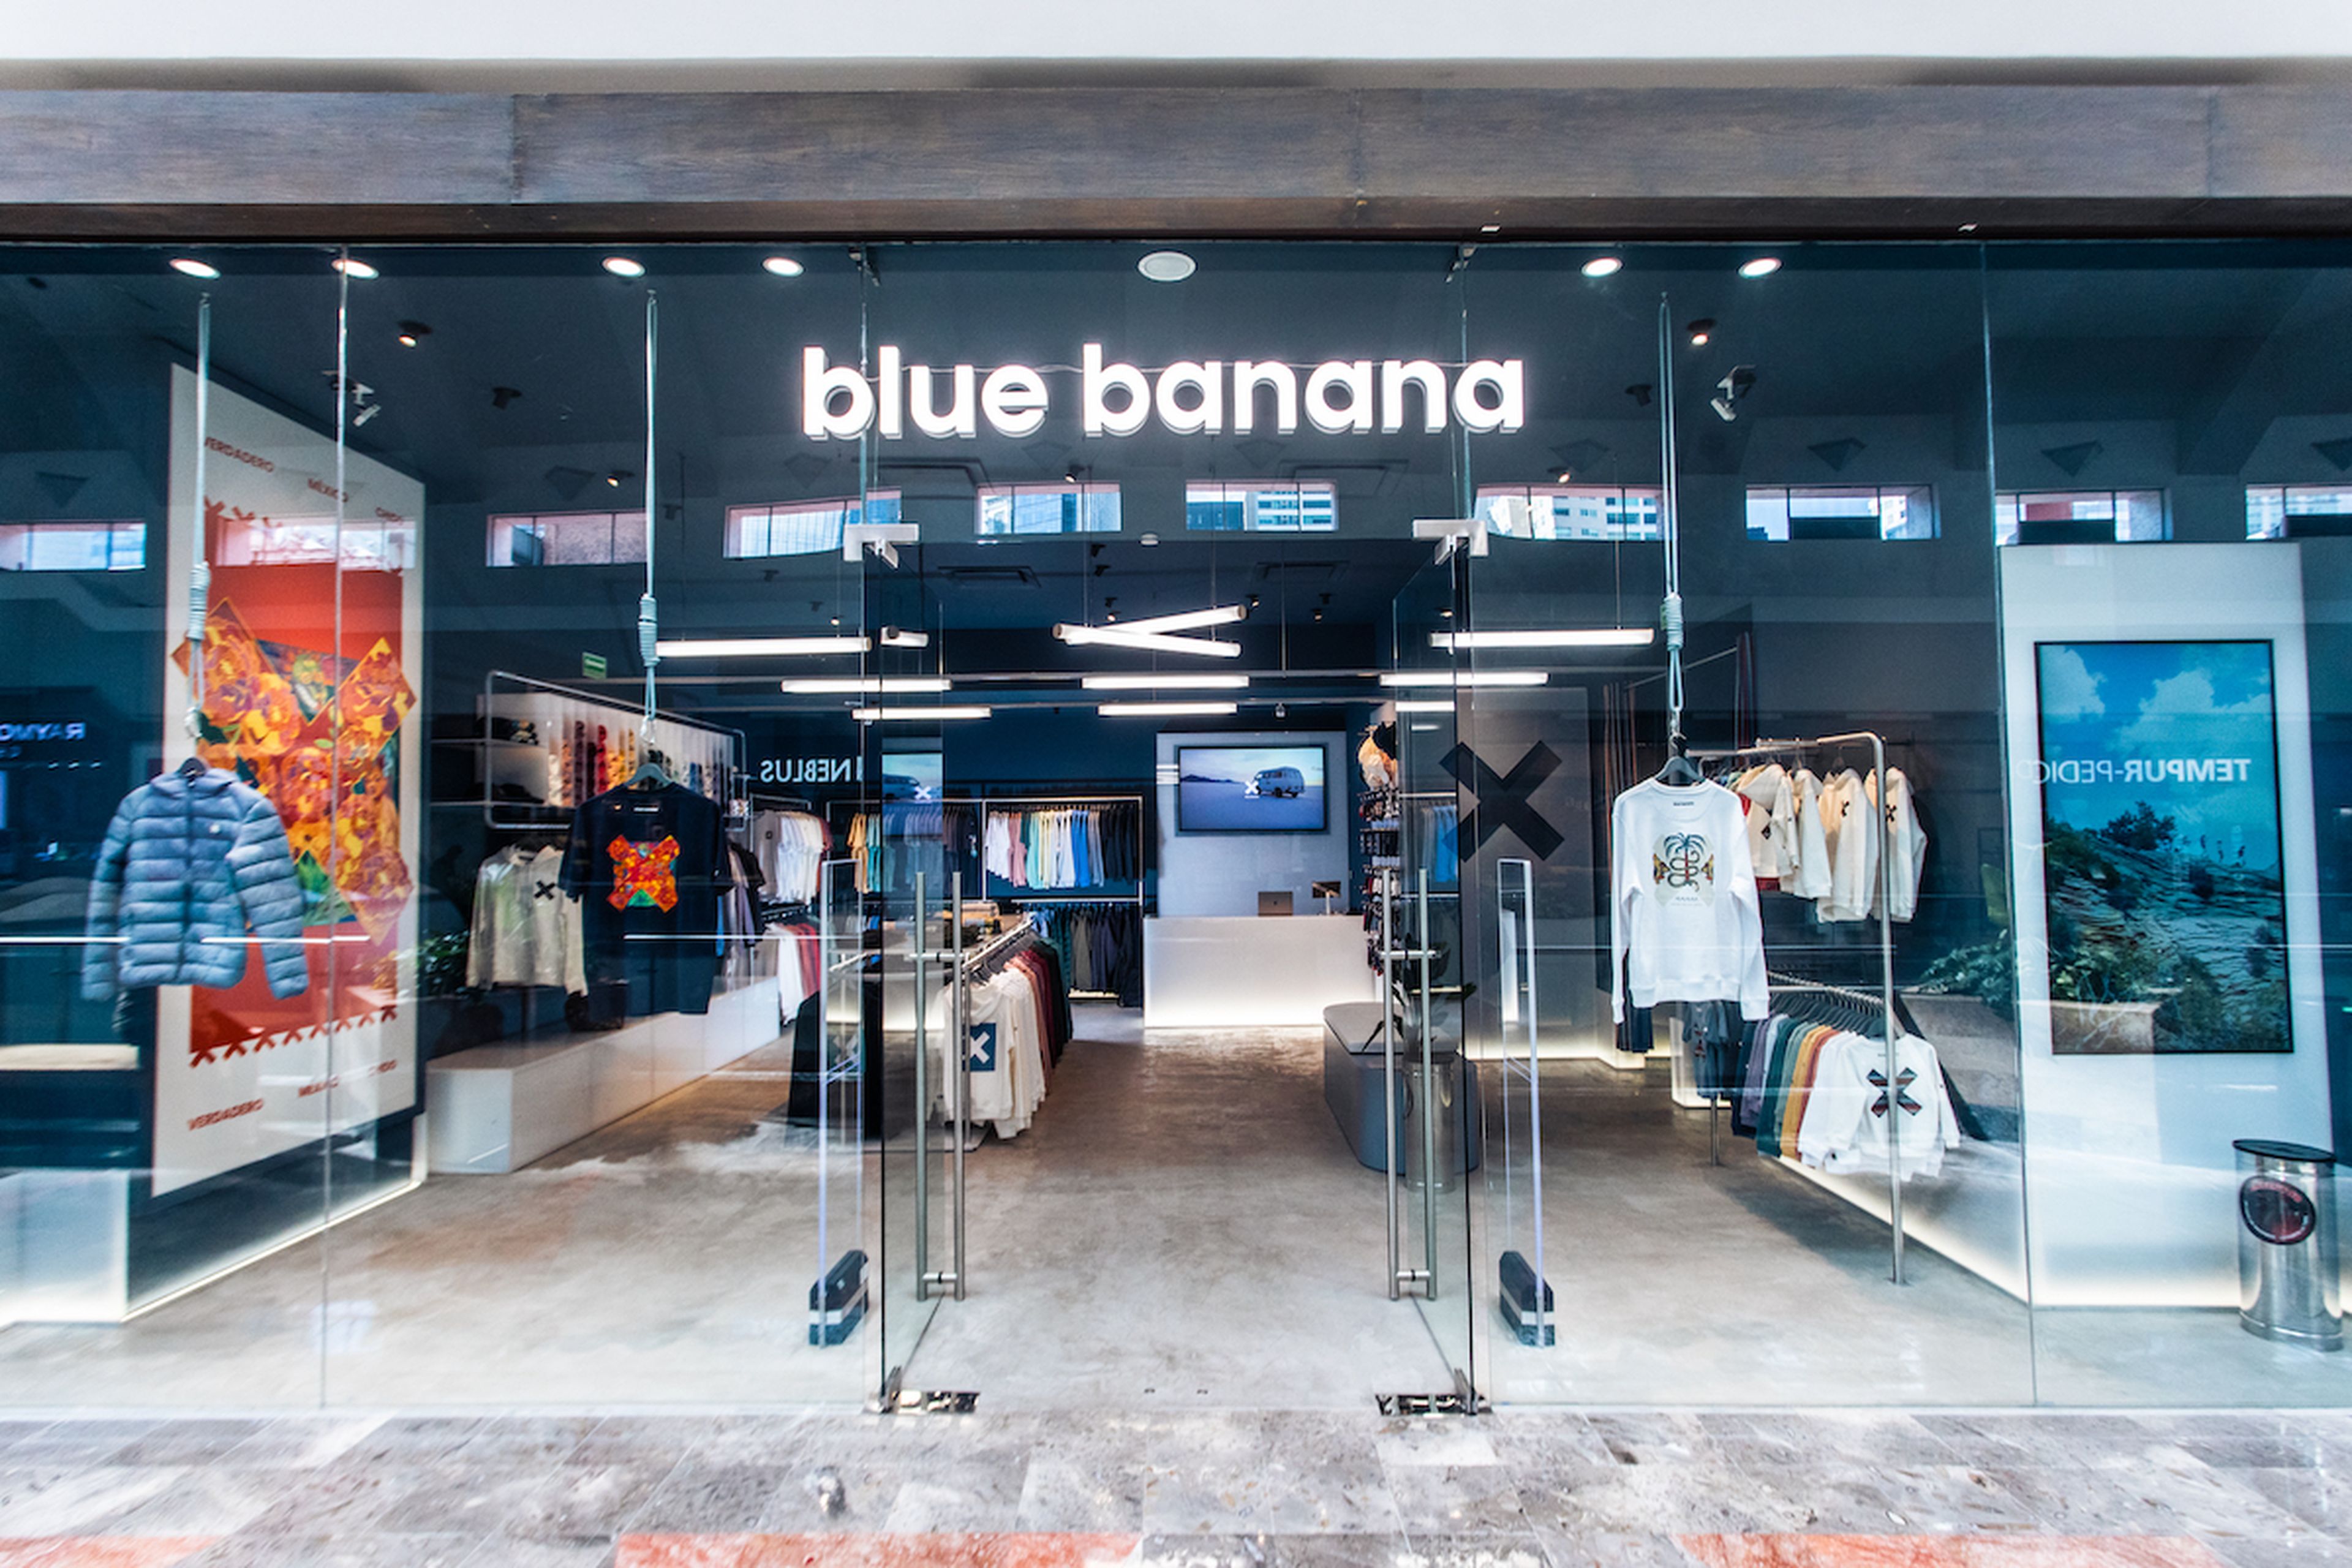 Tienda de Blue Banana en México, la primera fuera de España.